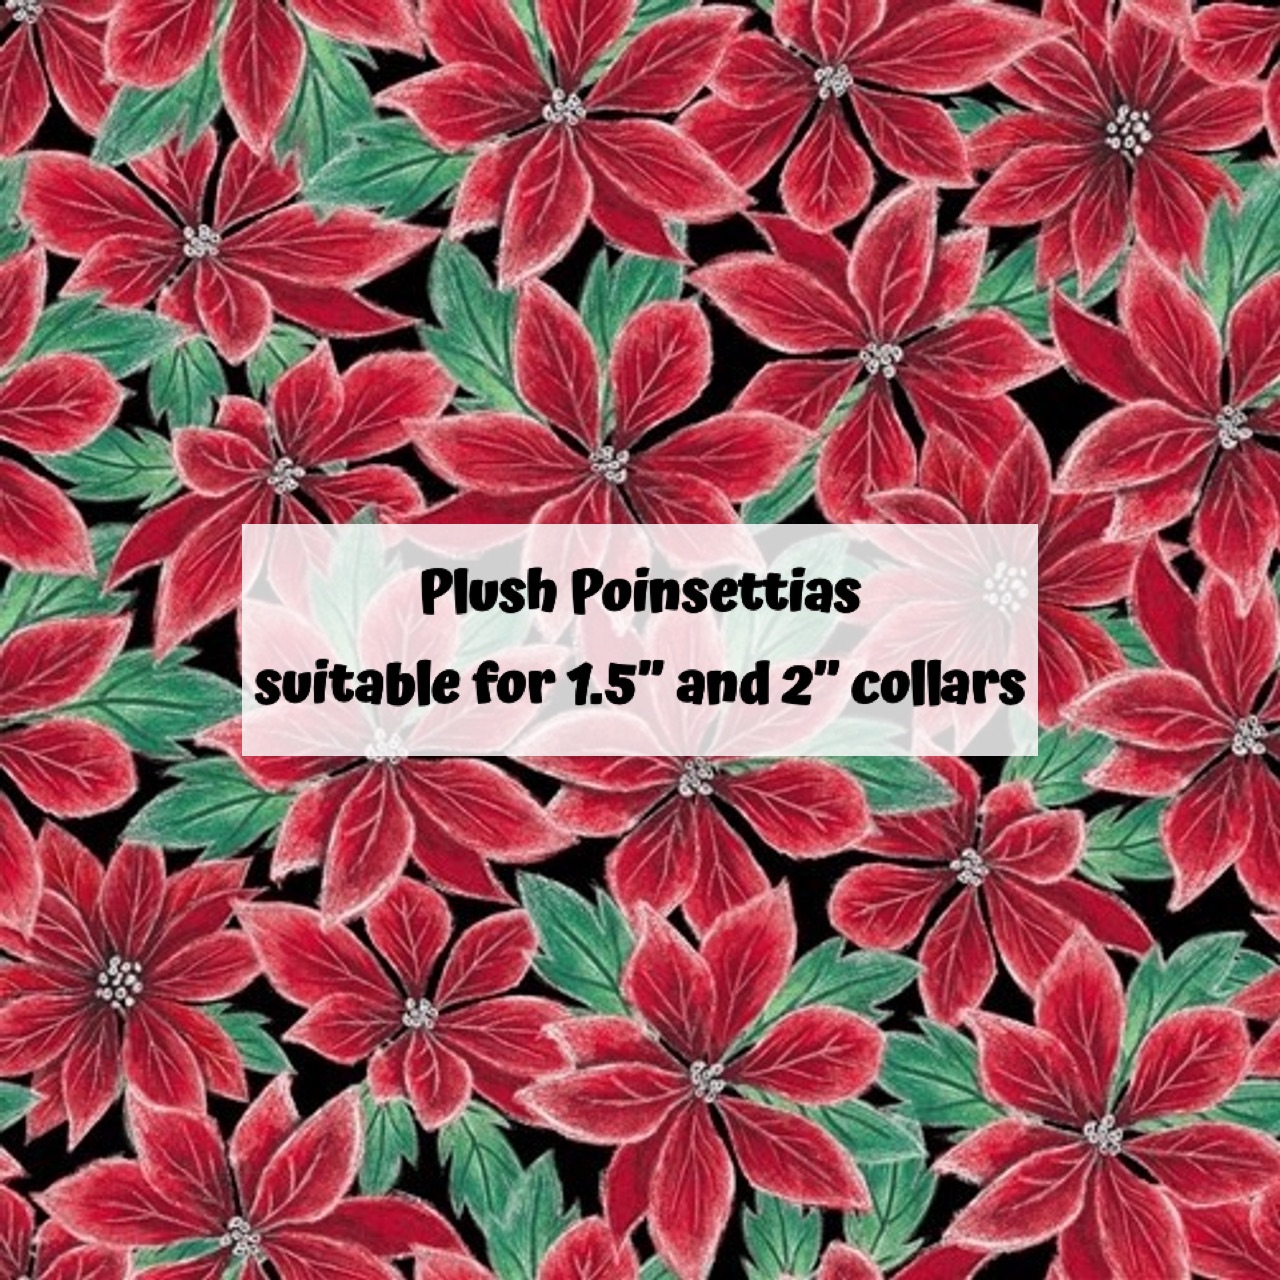 Plush Poinsettias